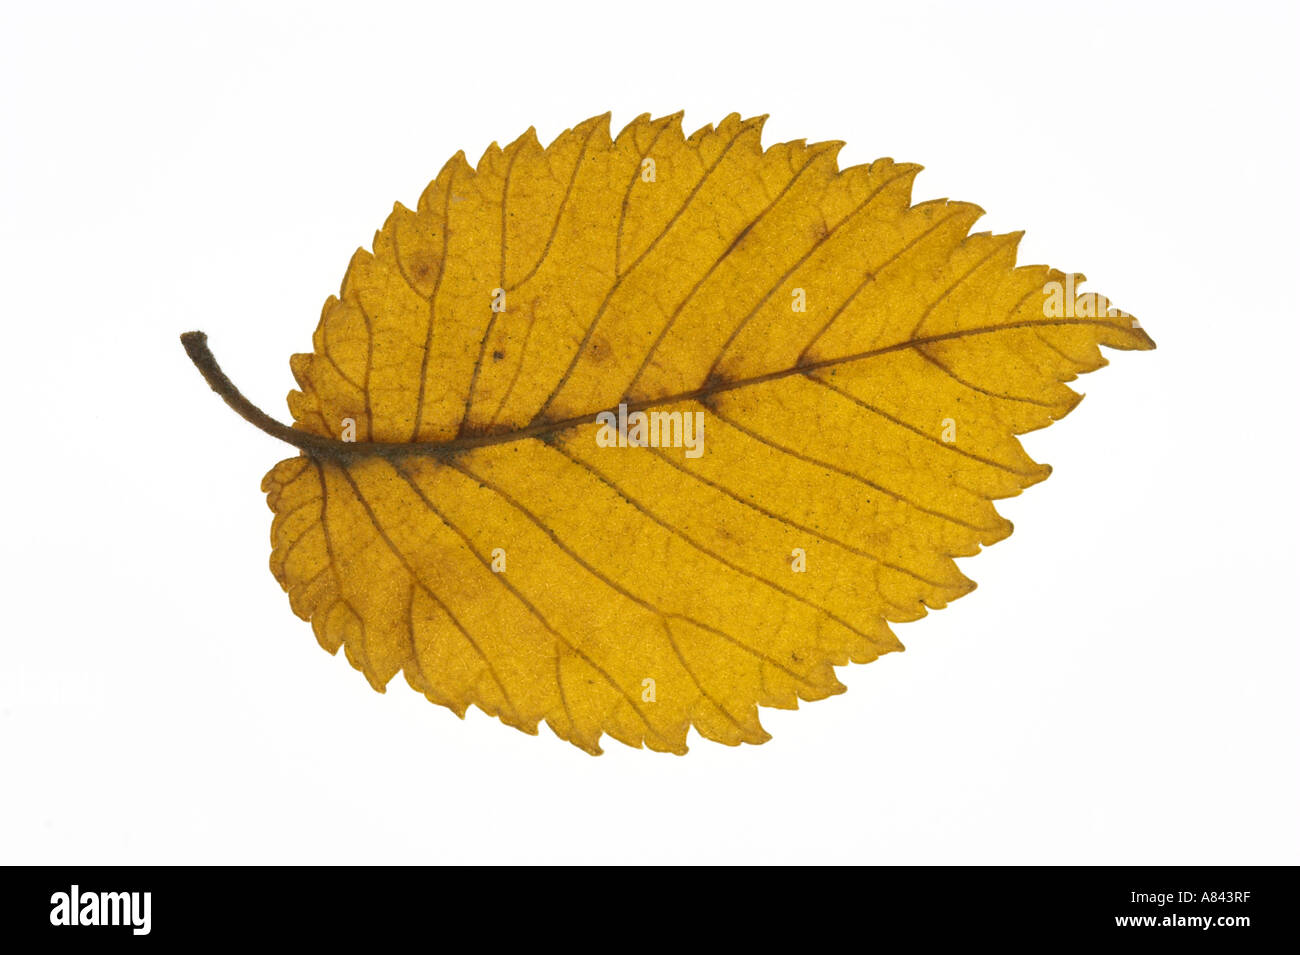 WYCH ELM yellow leaf on white background Ulmus glabra Stock Photo